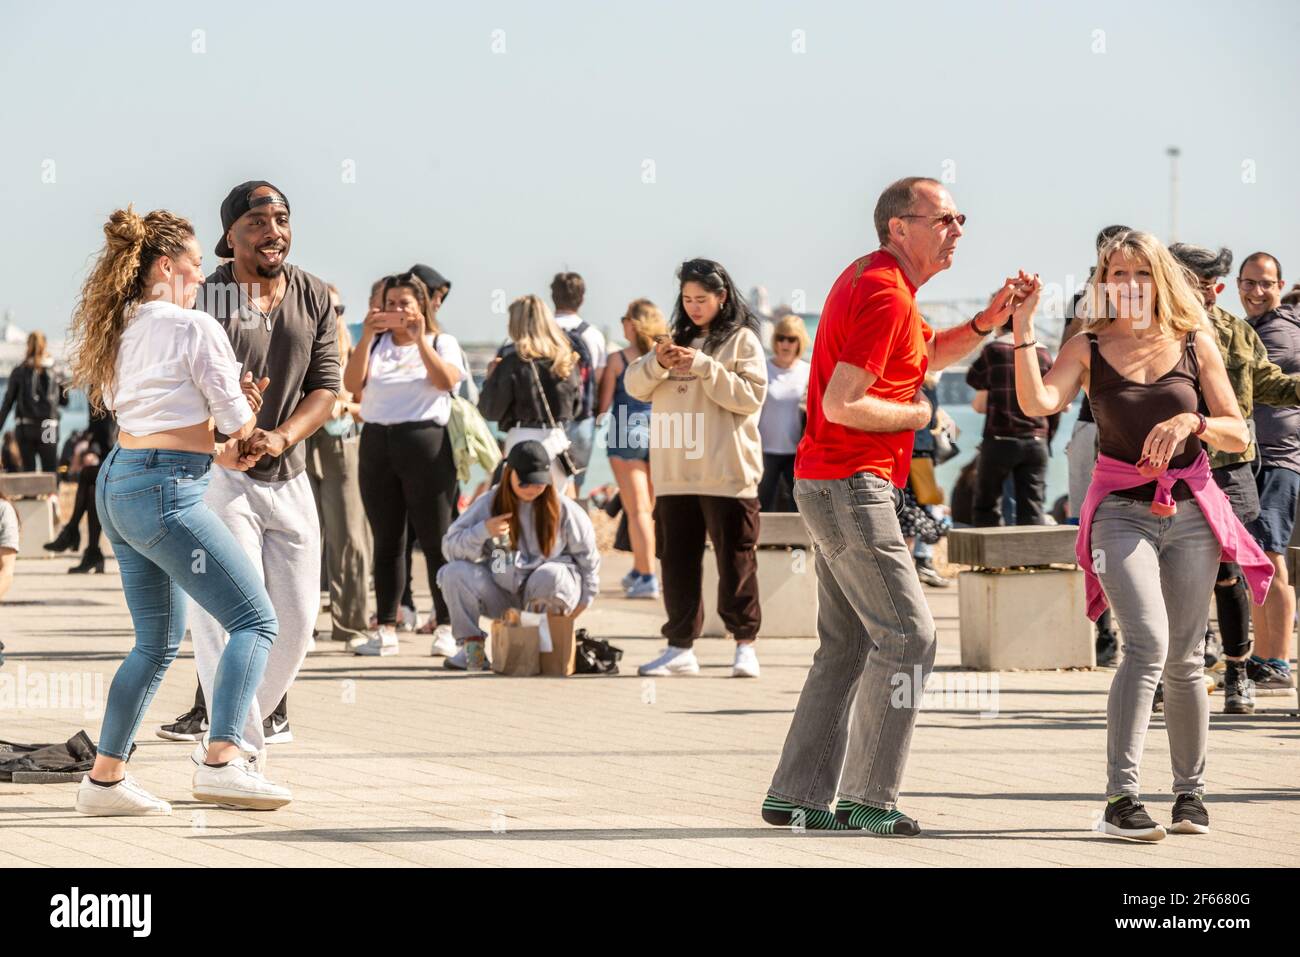 Brighton, März 30th 2021: Die schönen Nachmittagsbedingungen brachten die Massen heute zum Brighton Beach, auch bei dieser improvisierten Tanzparty. Kredit: Andrew Hasson/Alamy Live Nachrichten Gutschrift: Andrew Hasson/Alamy Live Nachrichten Stockfoto